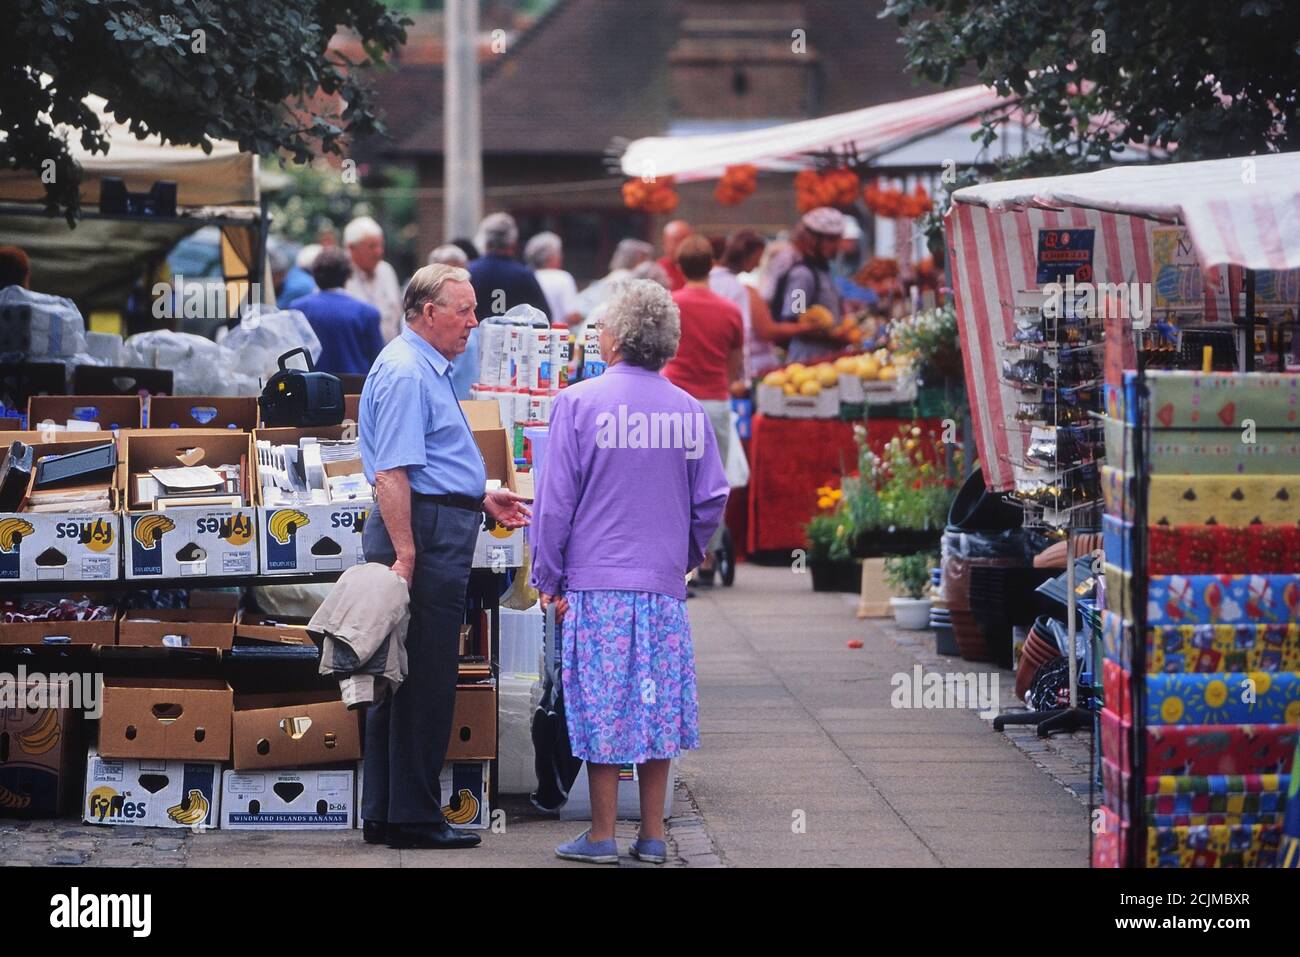 Street market, Wendover, Buckinghamshire, England, UK Stock Photo